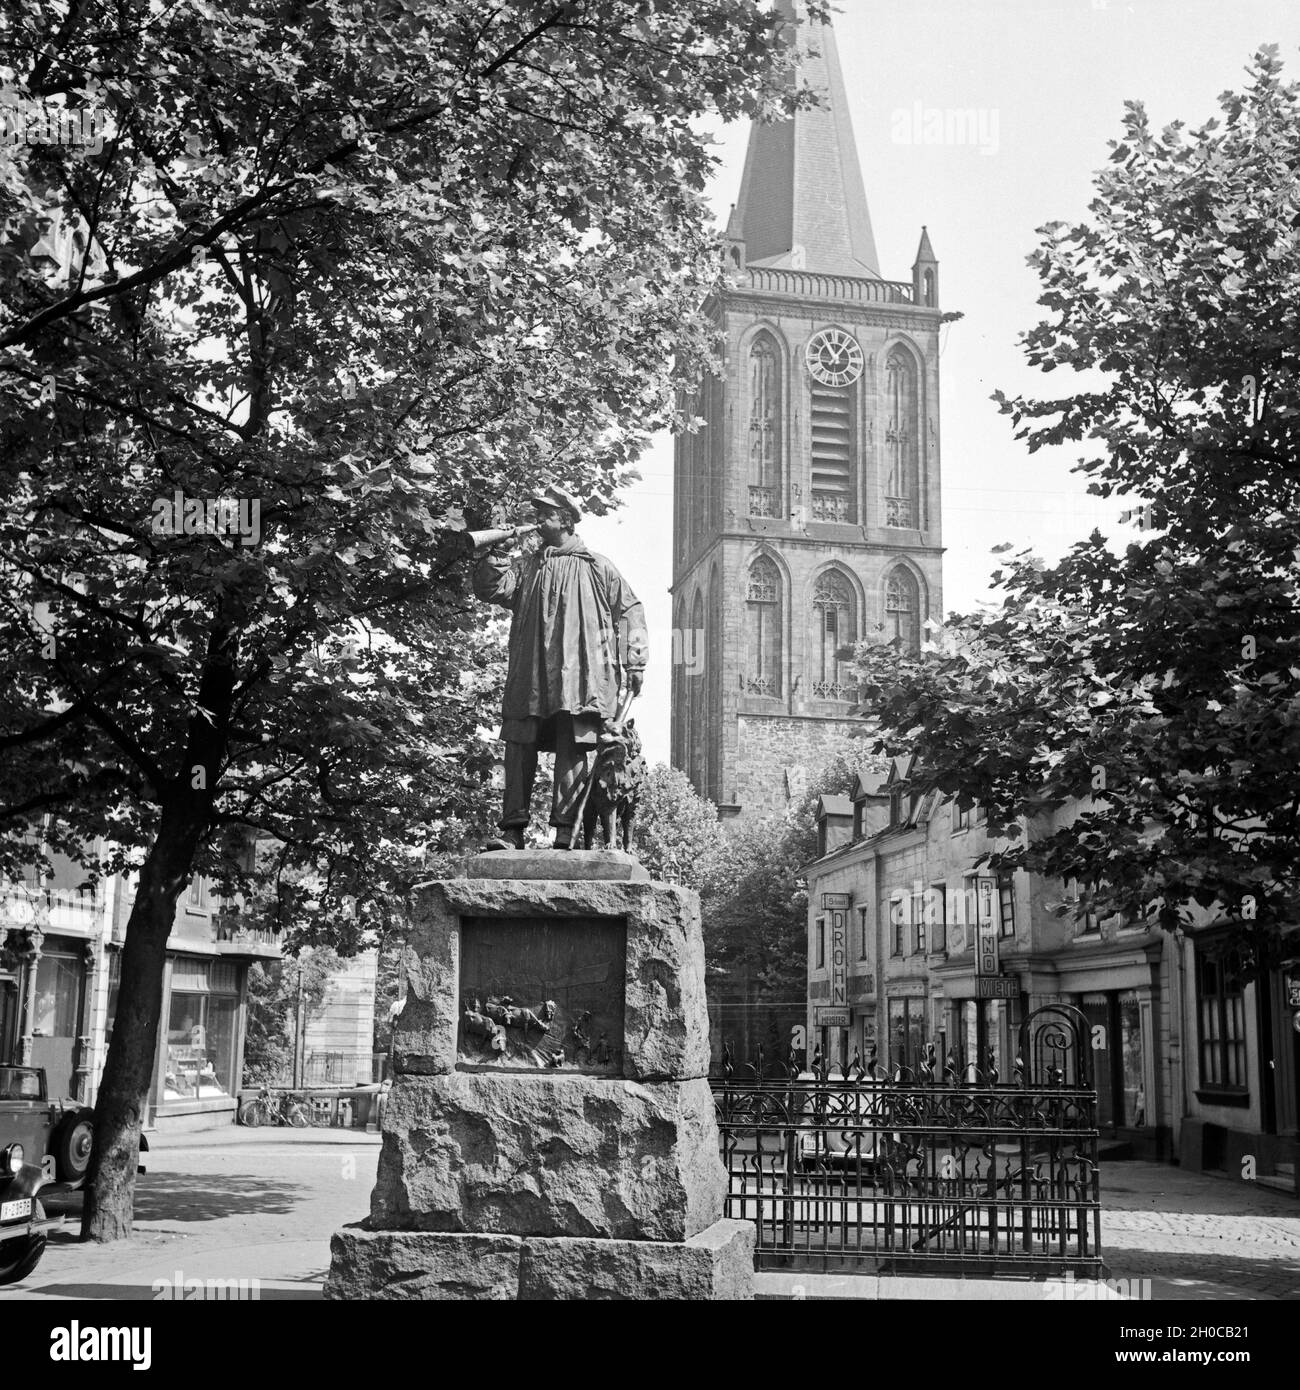 Das Kuhhirtendenkmal der Propsteikirche St. Peter und Paul in Bochum, Deutschland 1930er Jahre. Kuh herder Monument und canonry Kirche St. Peter und Paul in Bochum, Deutschland 1930. Stockfoto